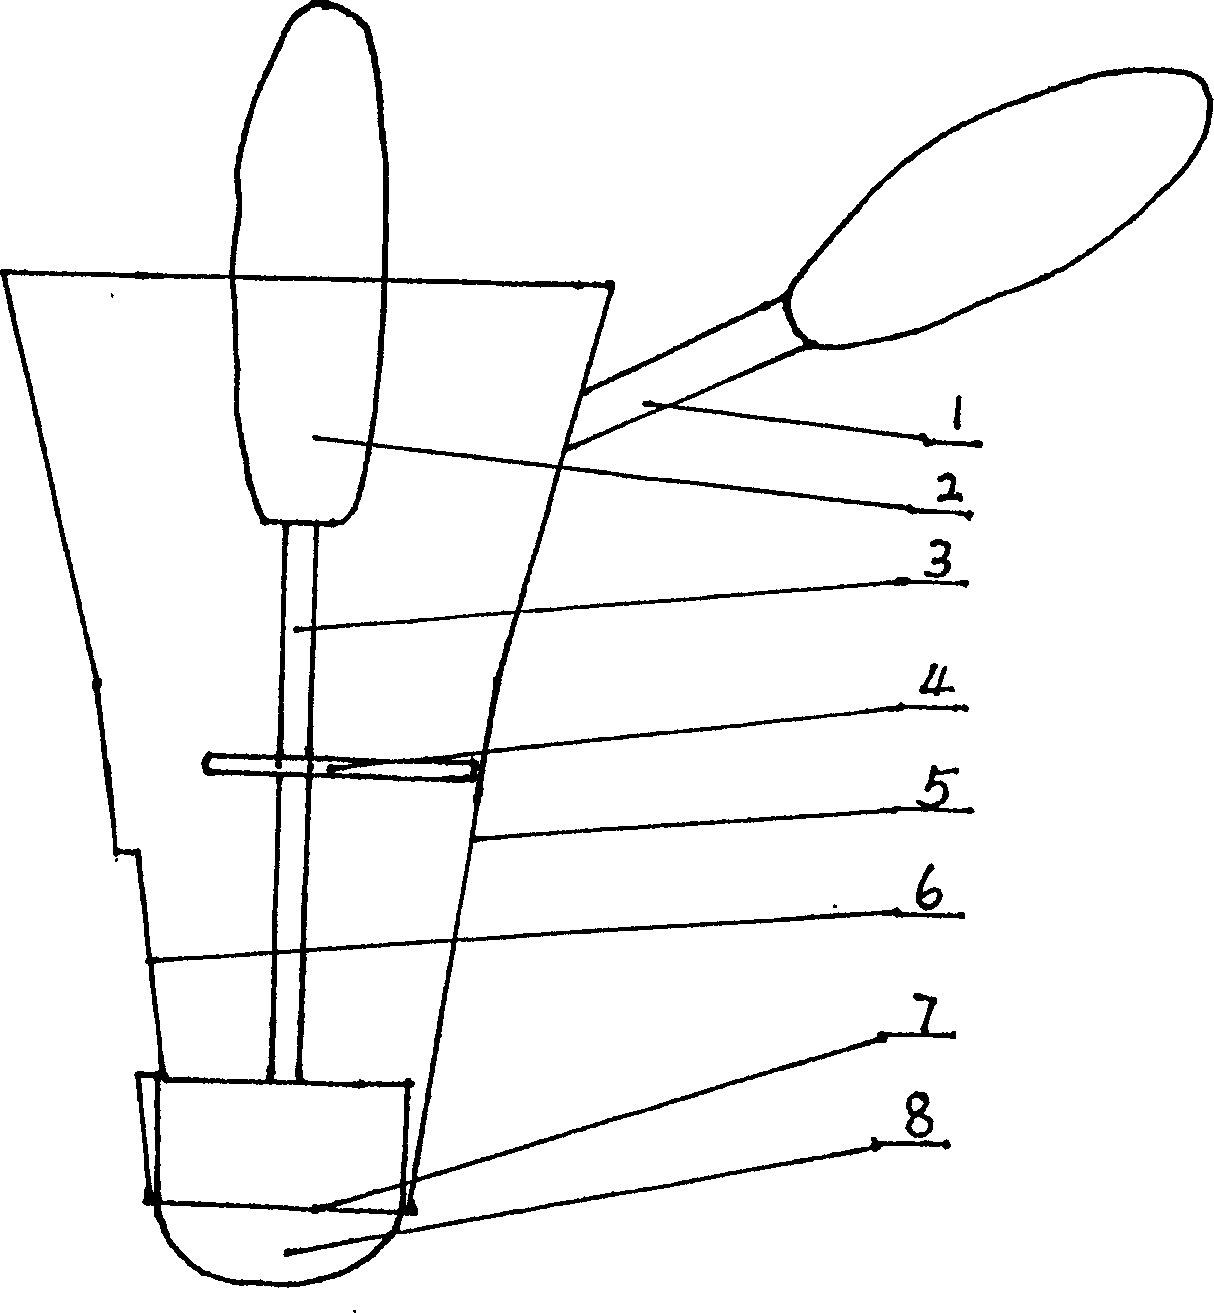 Anus speculum with side-holes